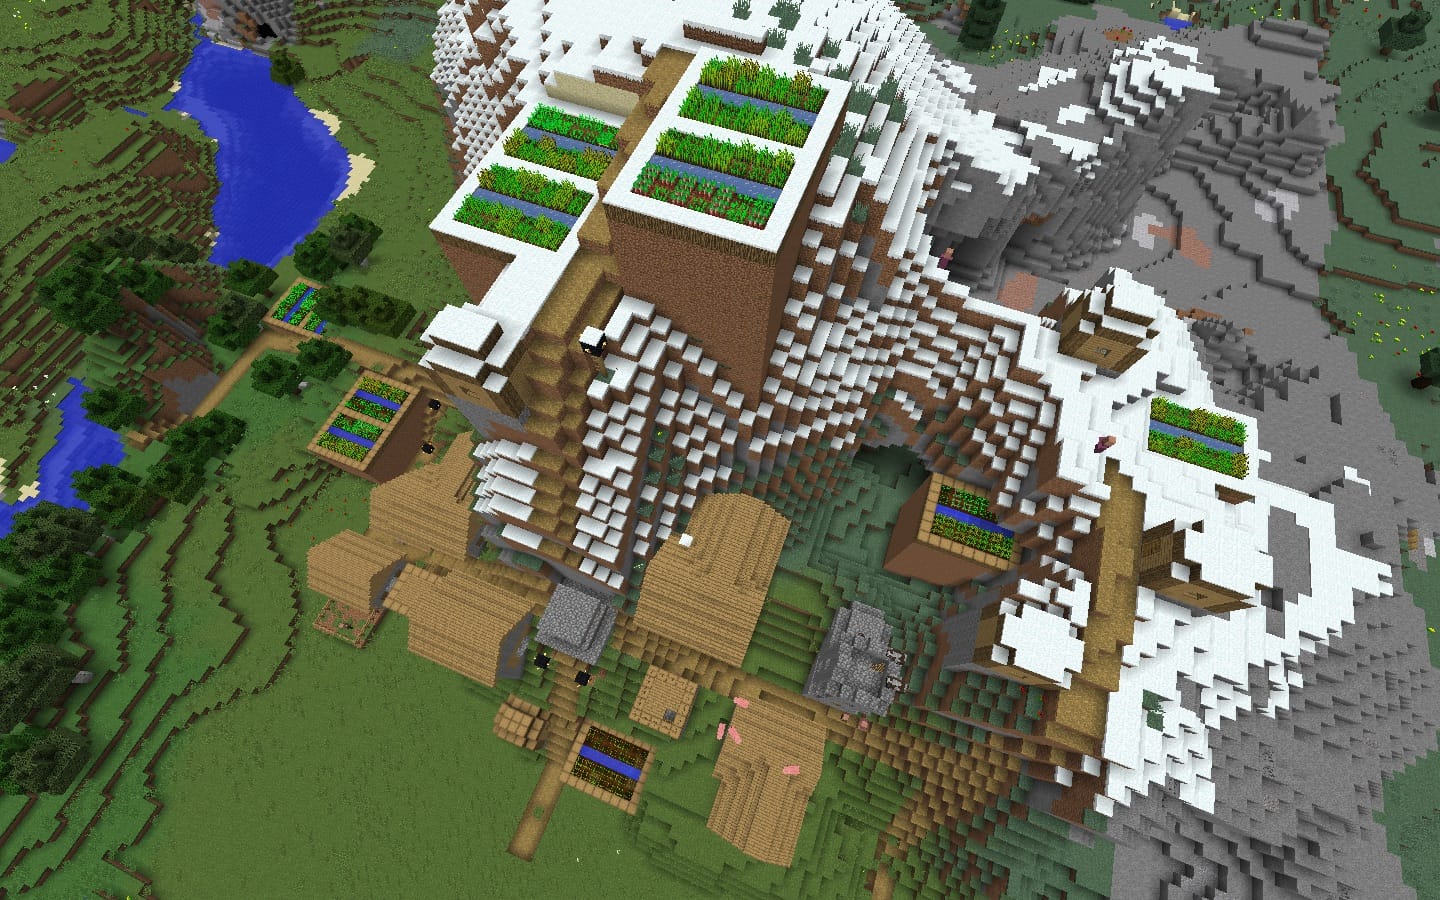 Snowy Mountainous Farming Village